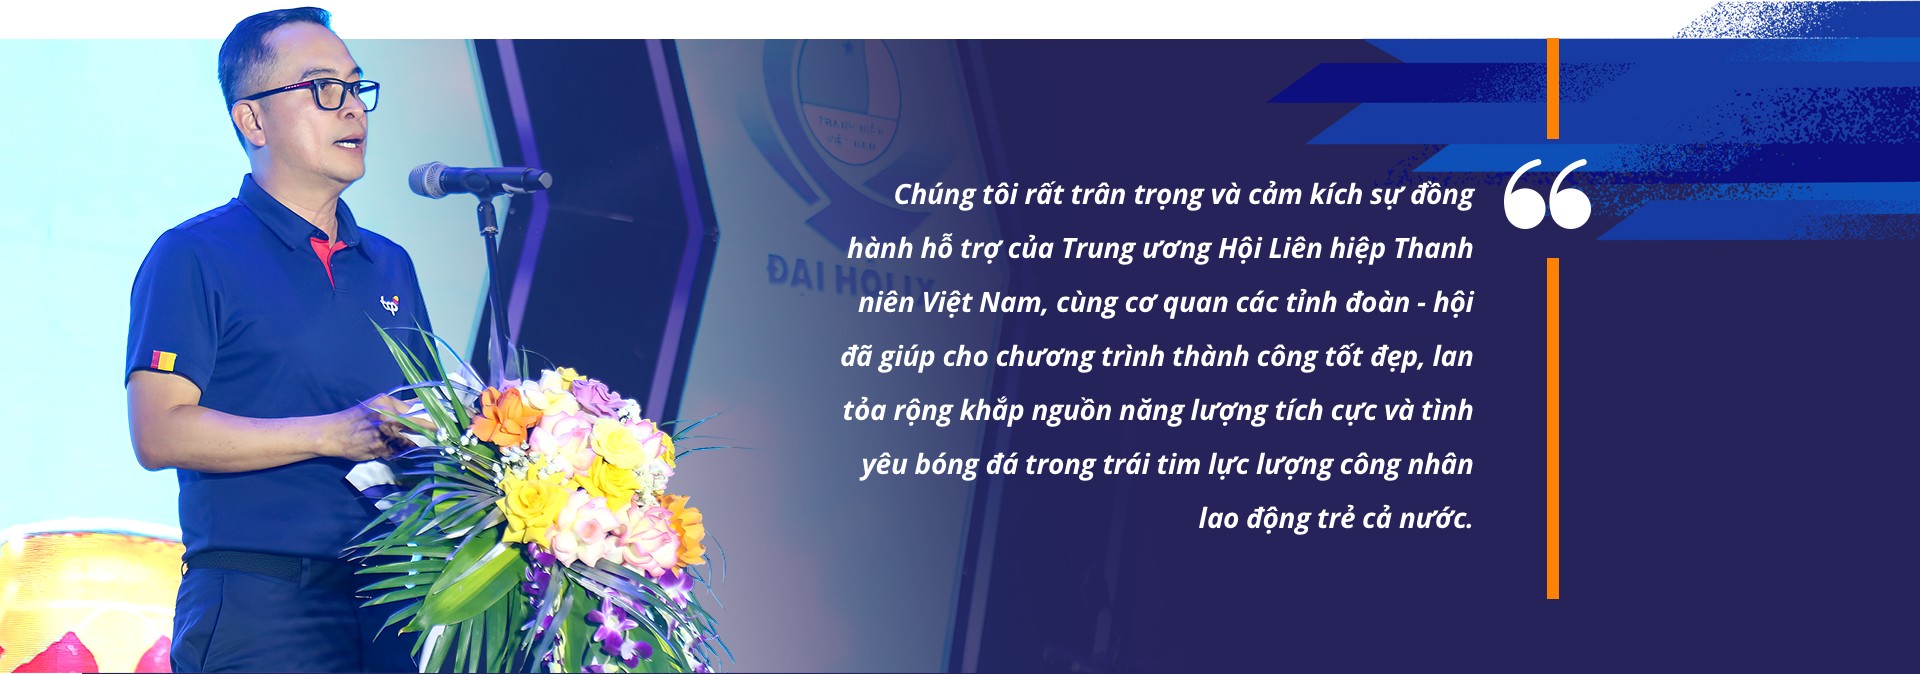 Ông Nguyễn Thanh Huân, Tổng Giám đốc TCP Việt Nam phát biểu tại Đêm nhạc hội trong khuôn khổ Ngày hội 